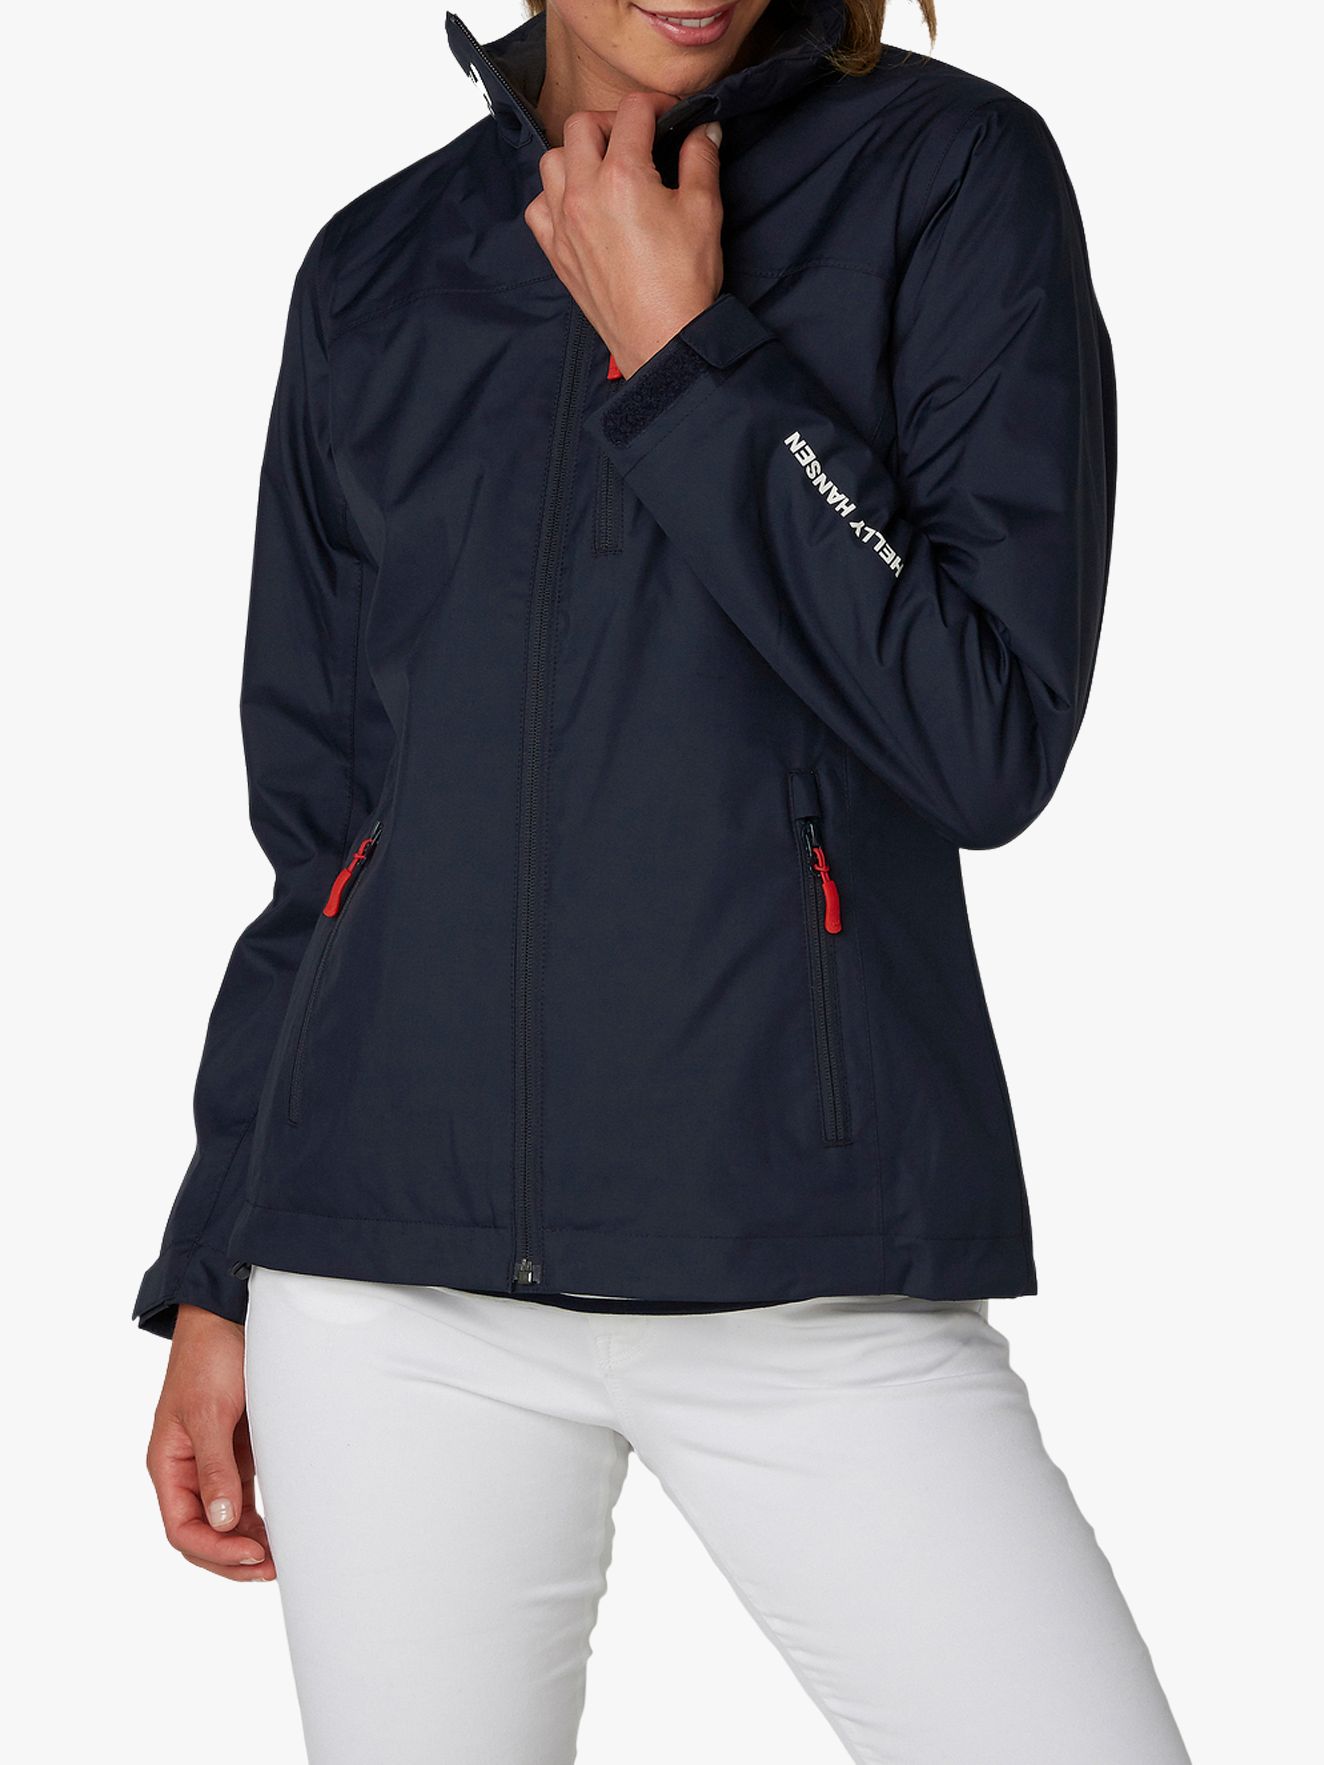 Helly Hansen Crew Midlayer Women's Waterproof Jacket